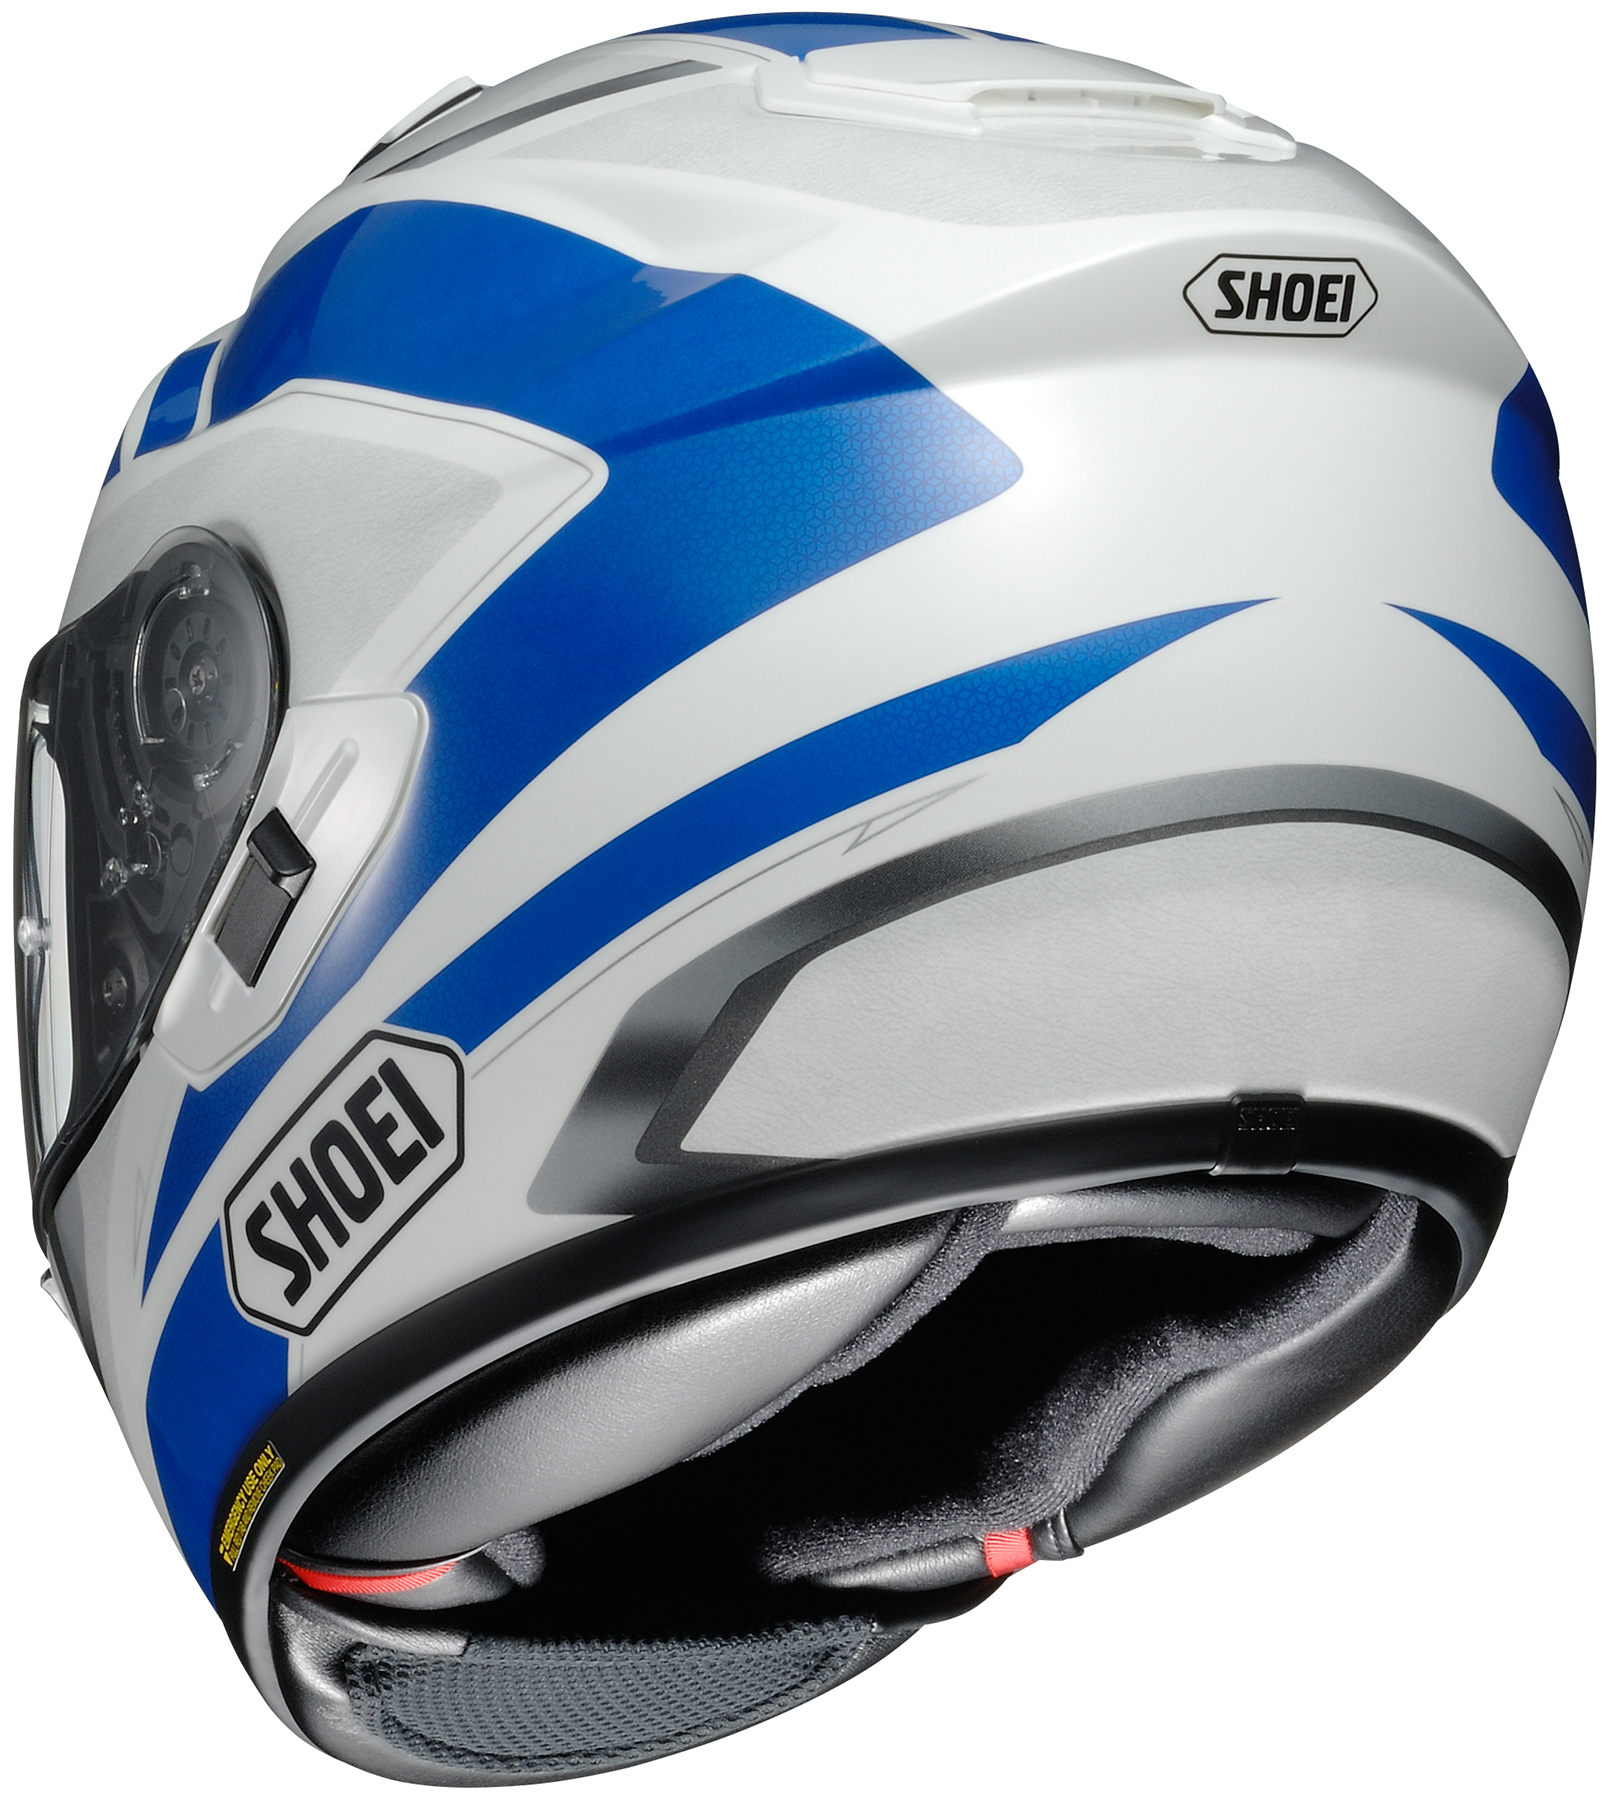 Shoei Adult Blue/White GT-Air Swayer Full Face Motorcycle Helmet DOT | eBay